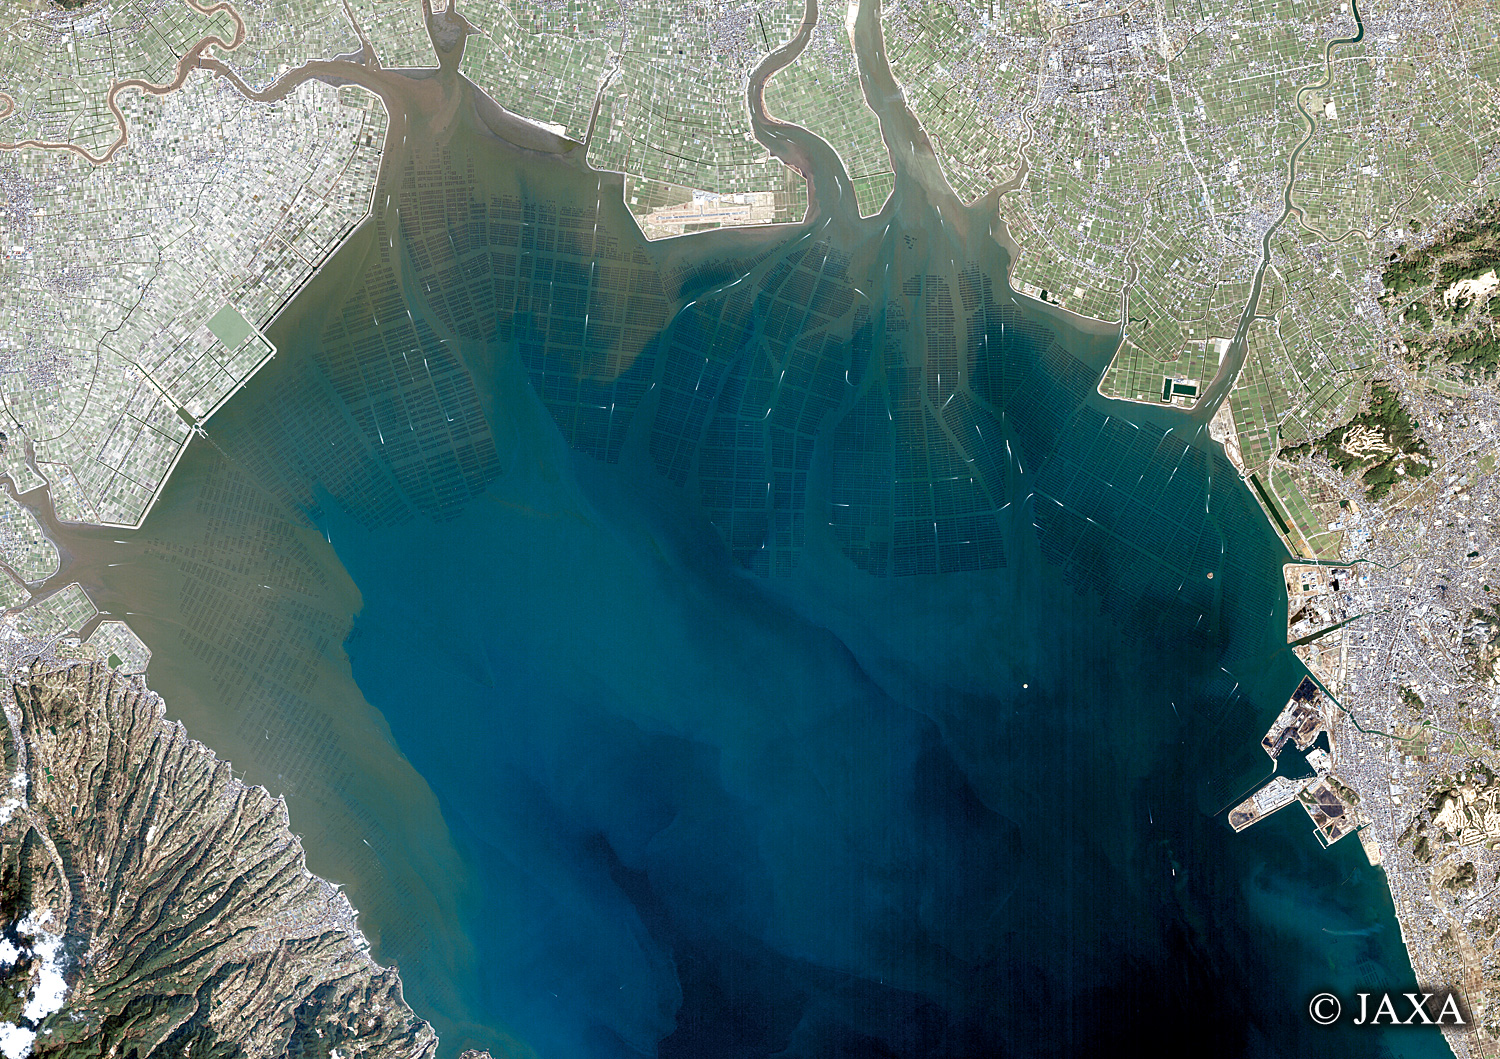 だいちから見た日本の都市 有明海の海苔網:衛星画像